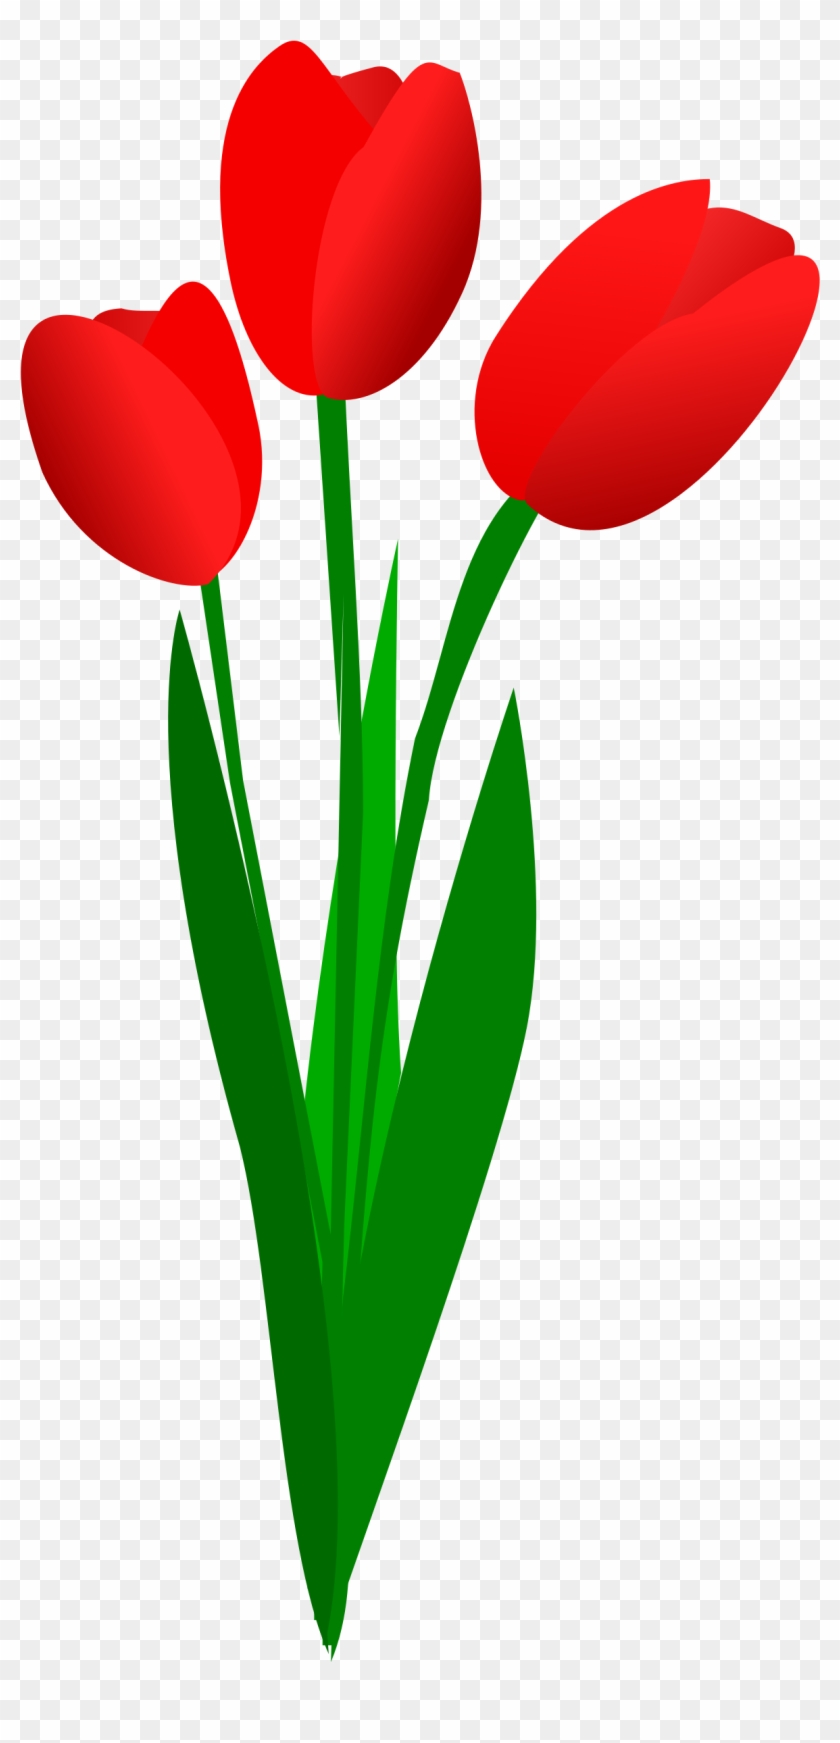 Tulips Clipart - Red Tulip Clip Art #155090